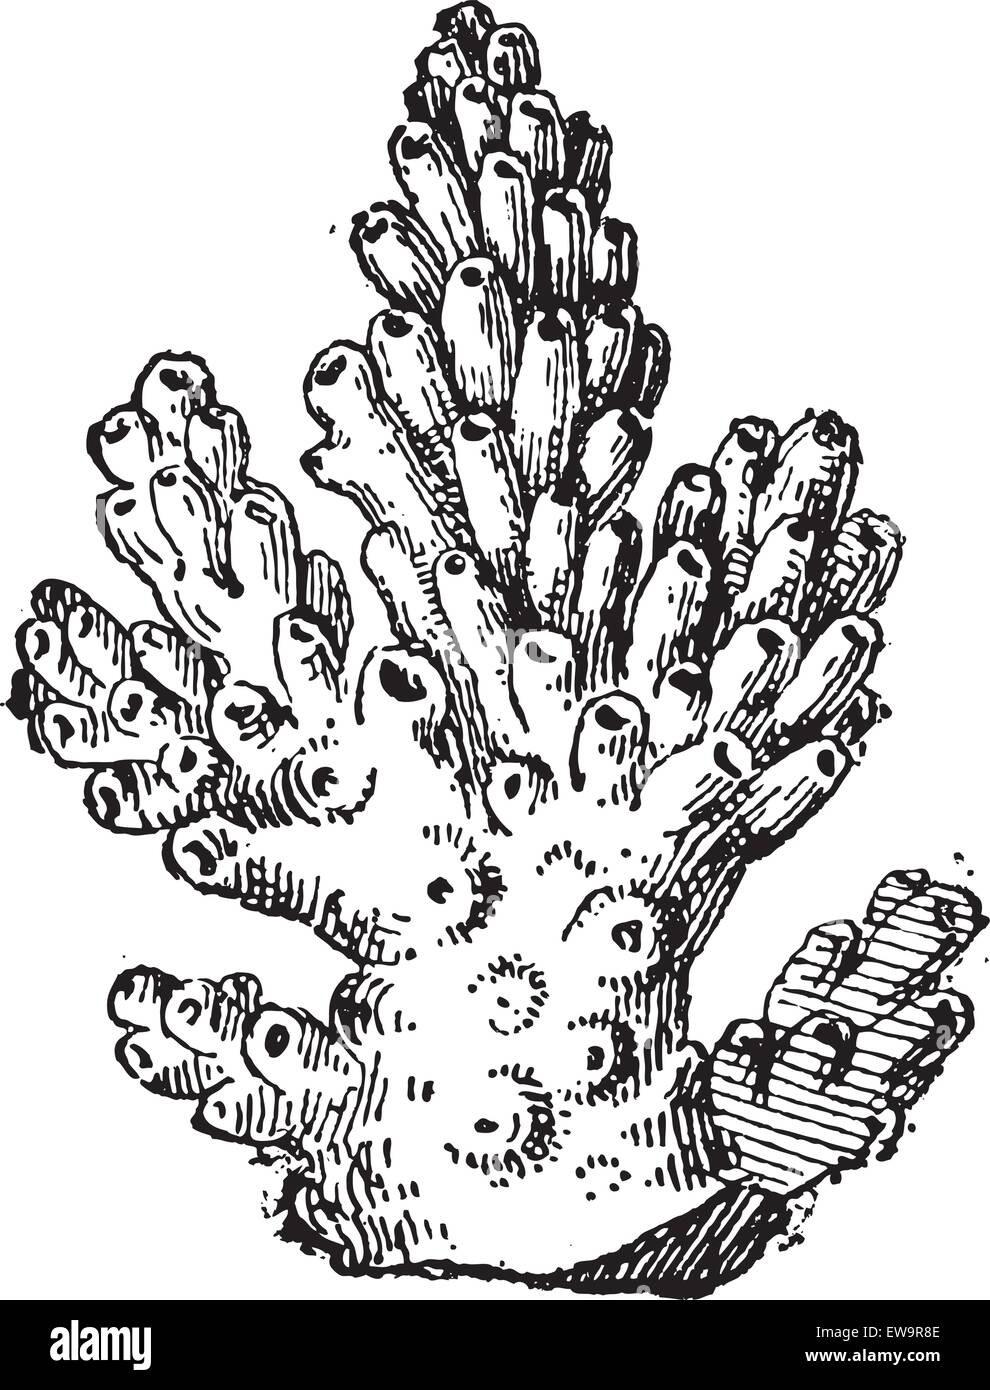 Koralle oder Anthozoa, graviert Vintage Illustration. Wörterbuch der Worte und Dinge - Larive und Fleury - 1895 Stock Vektor